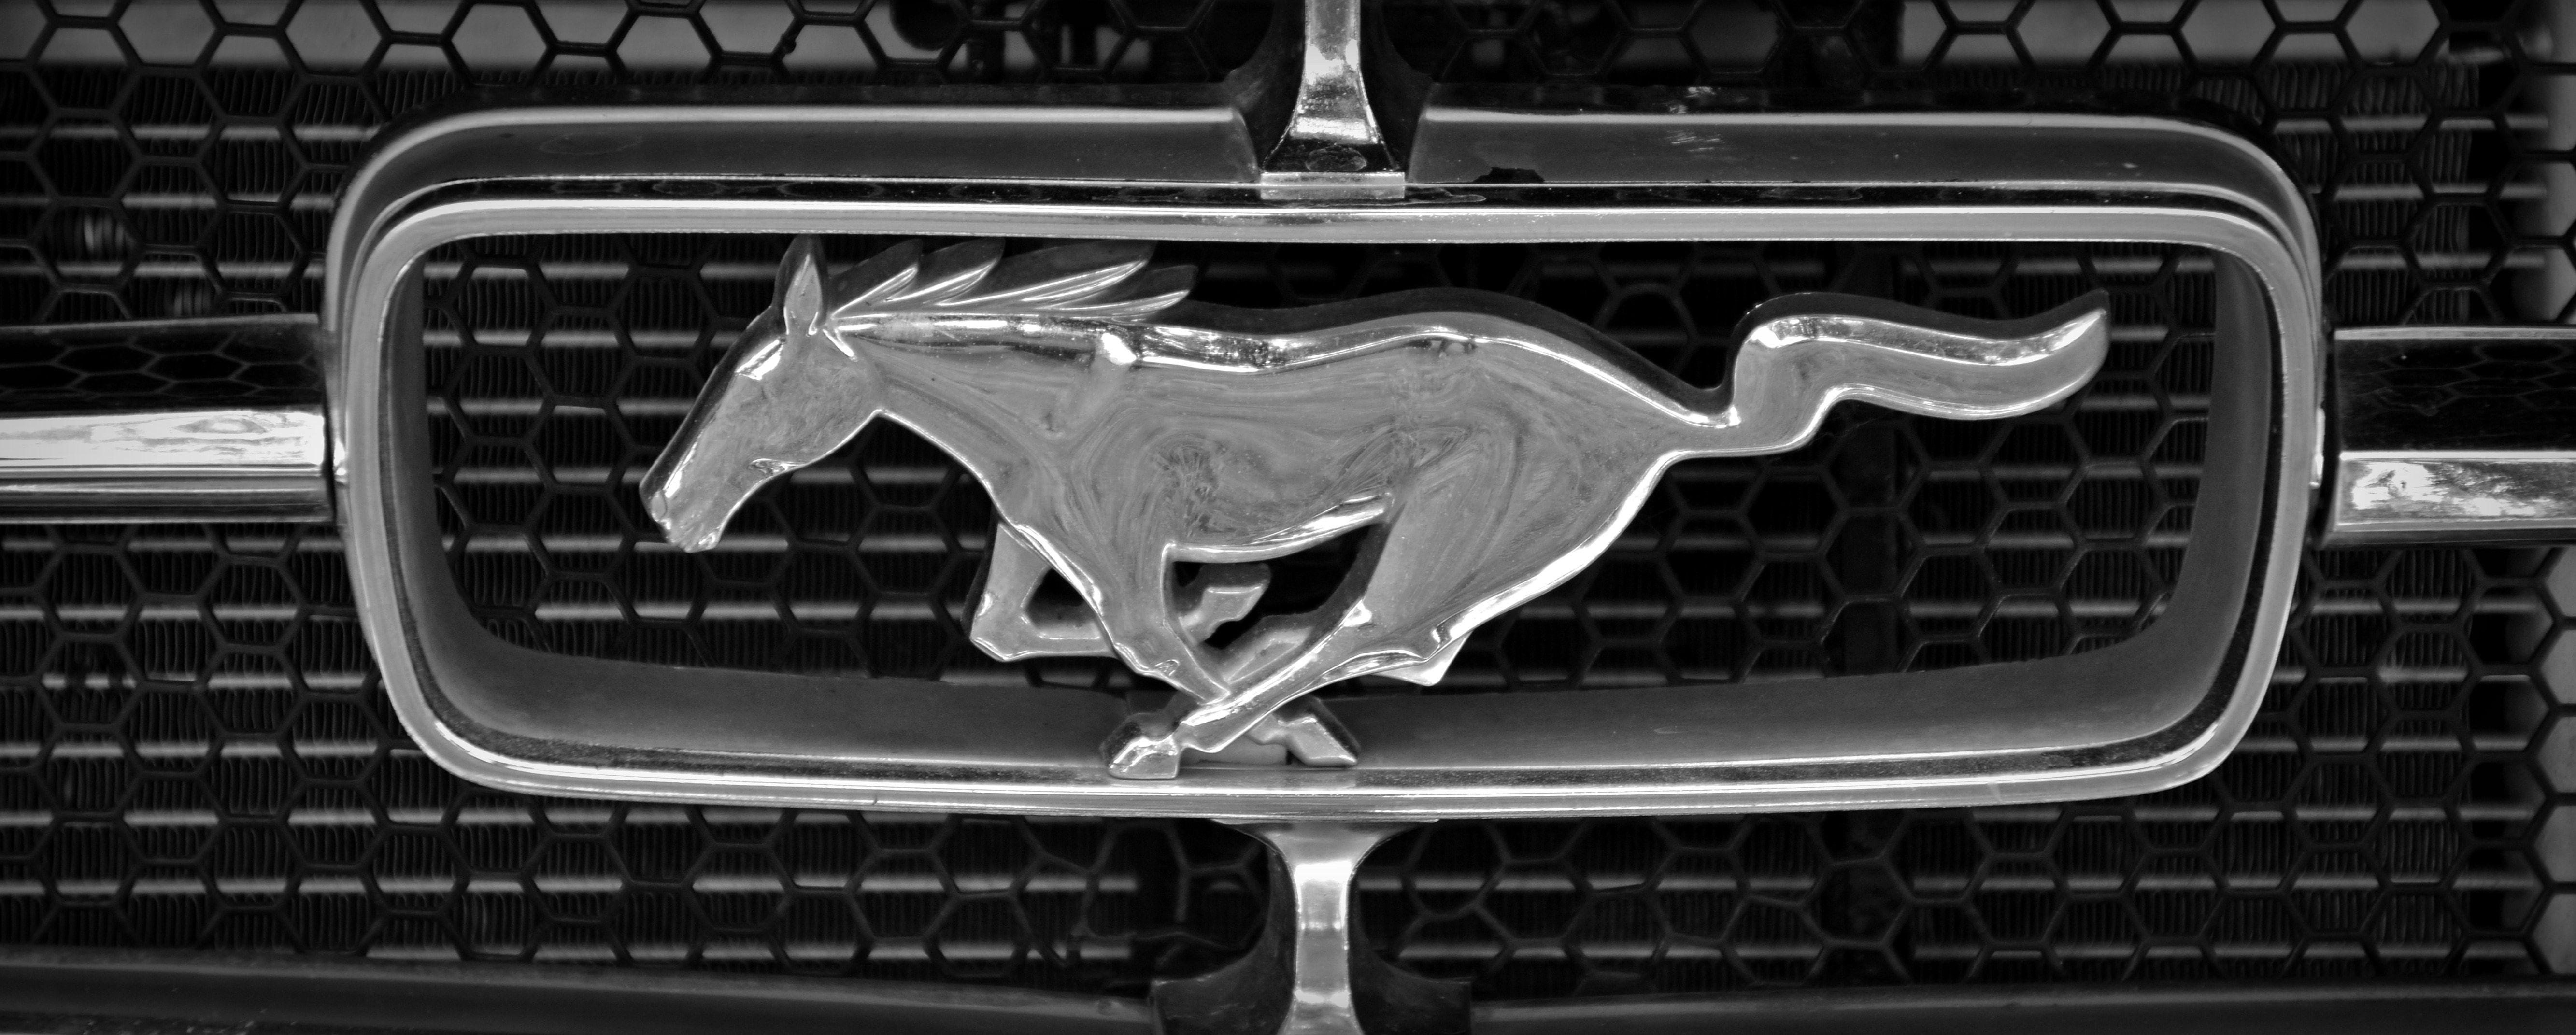 Black Ford Mustang Logo - ford mustang logo free image